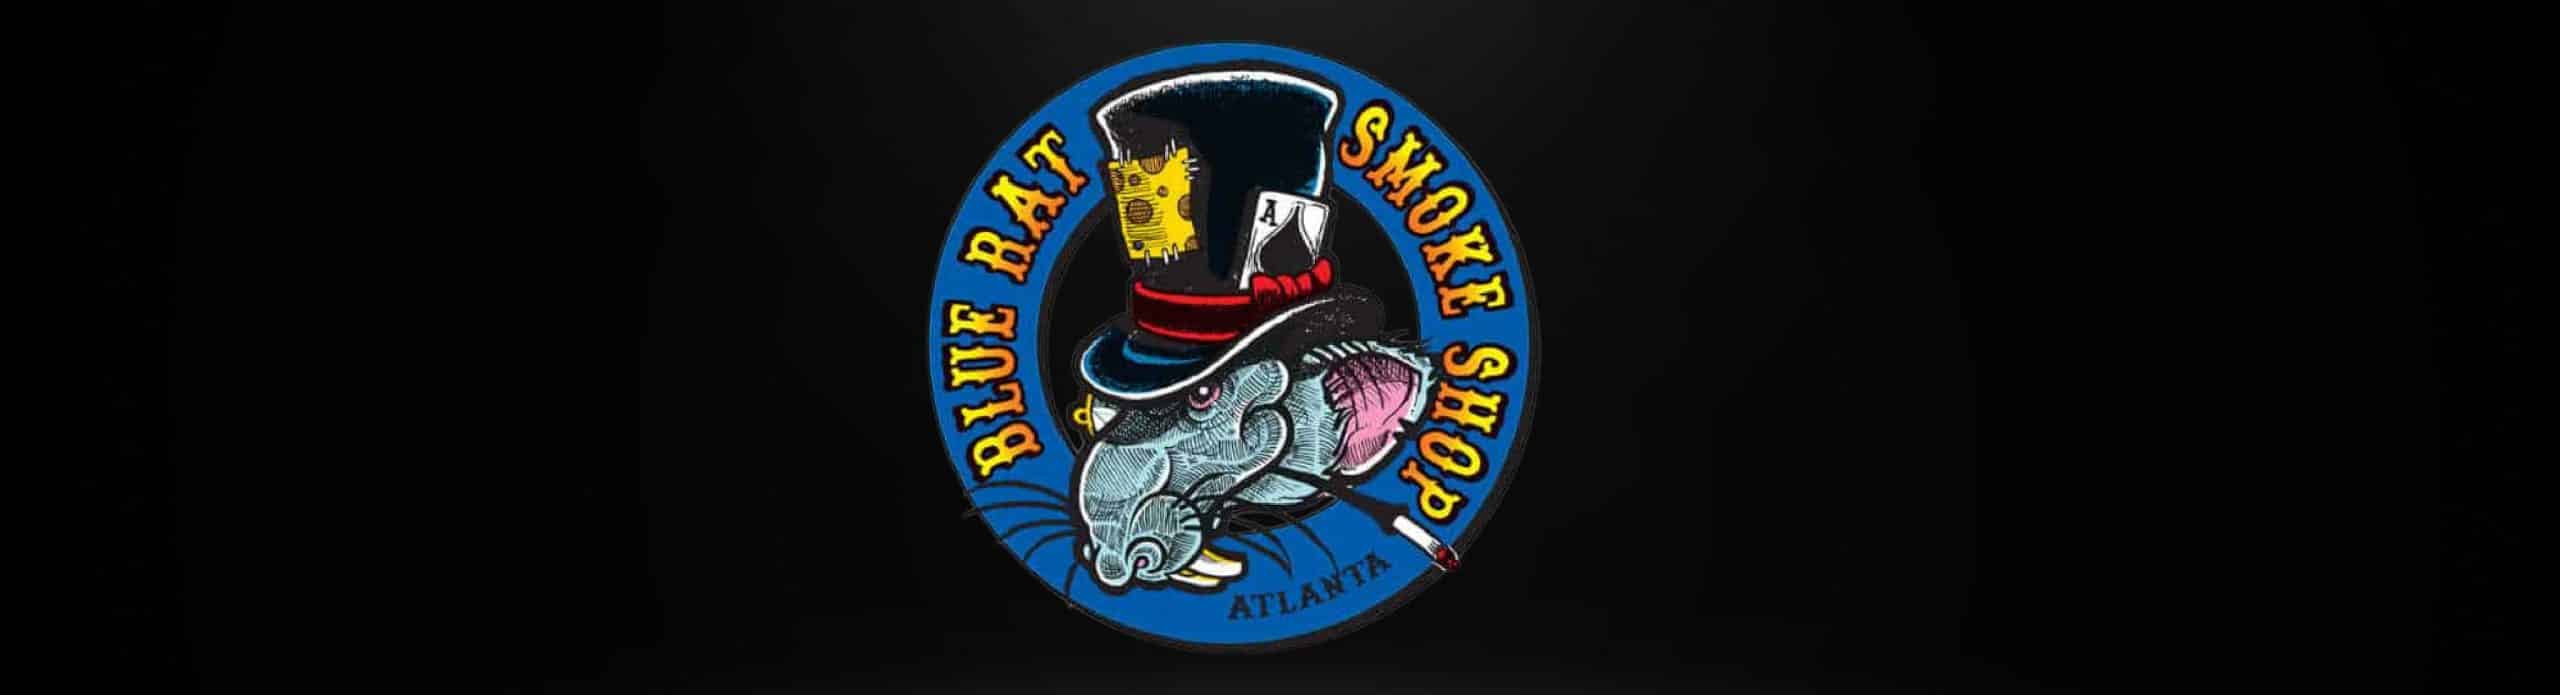 image of blue rat smoke shop logo